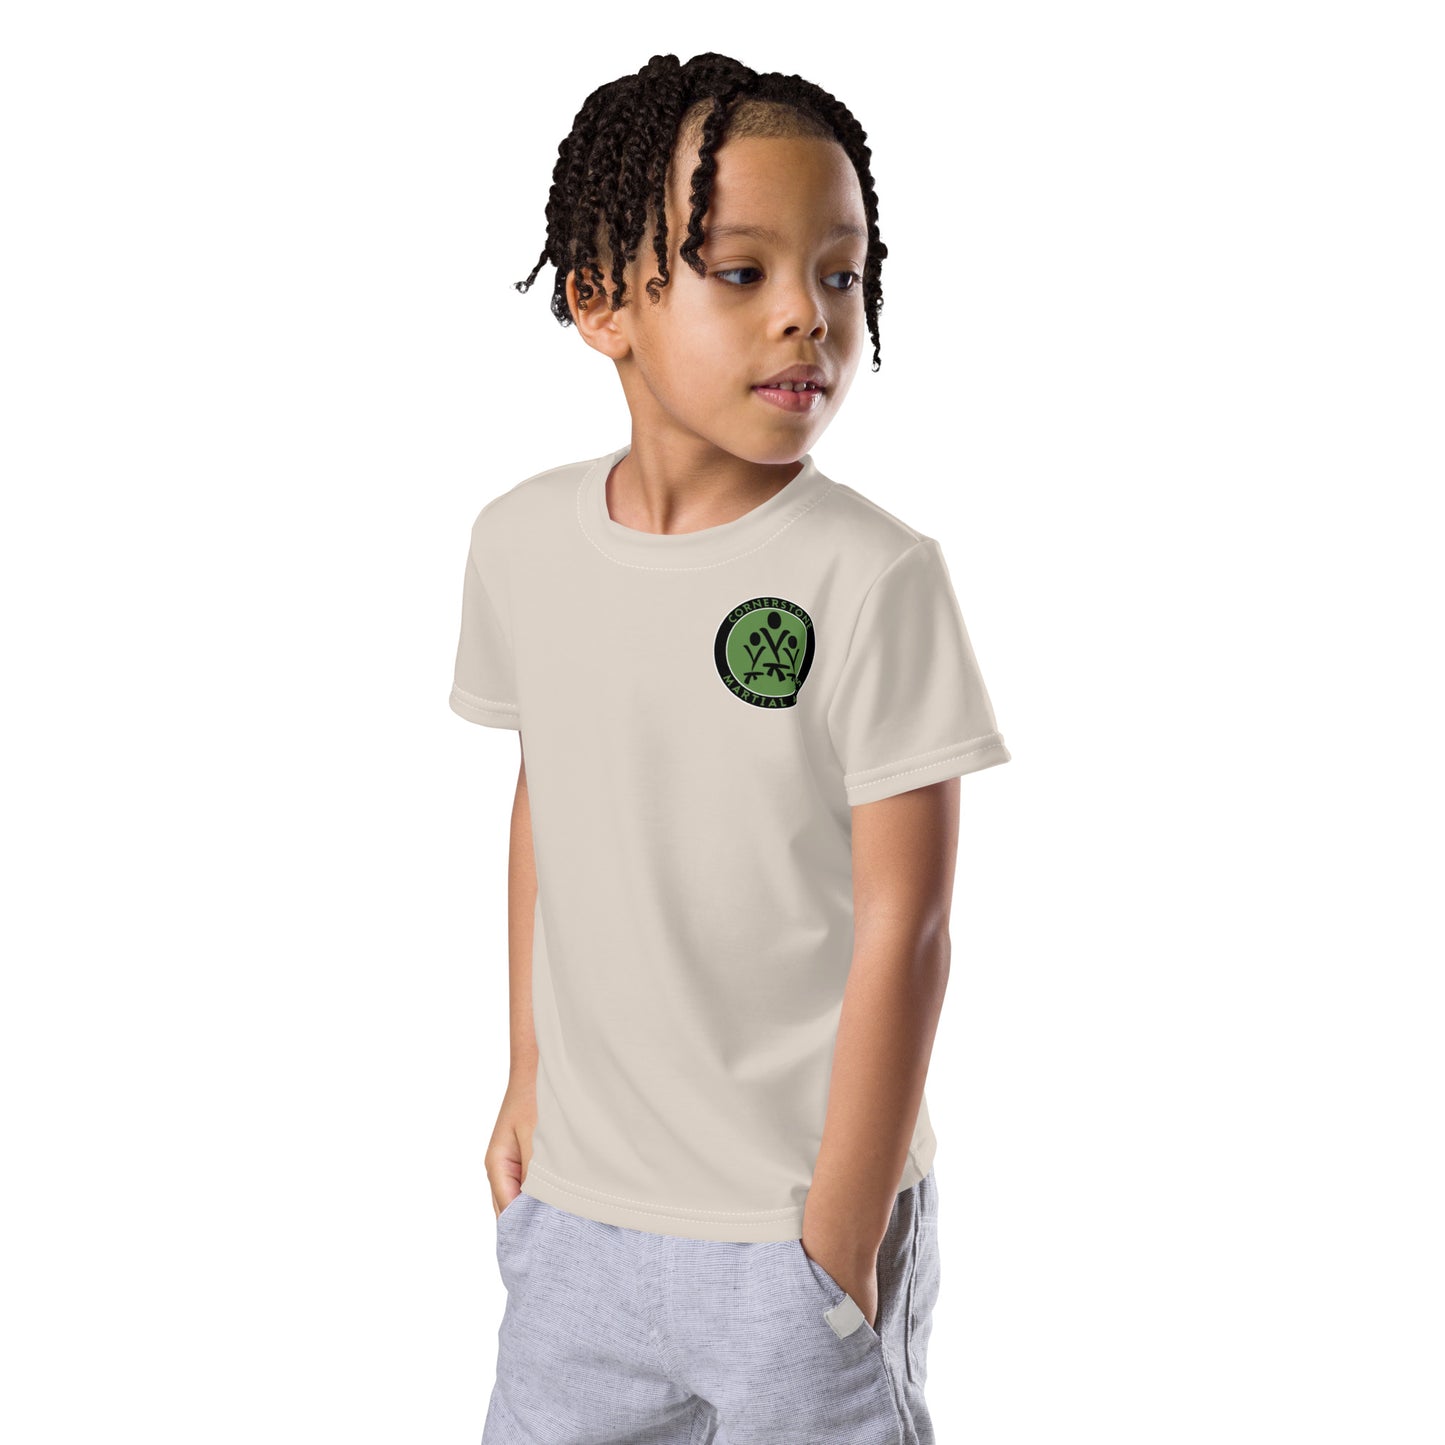 Perseverance - 7 Tenets Toddler & Kids Tech T-Shirt